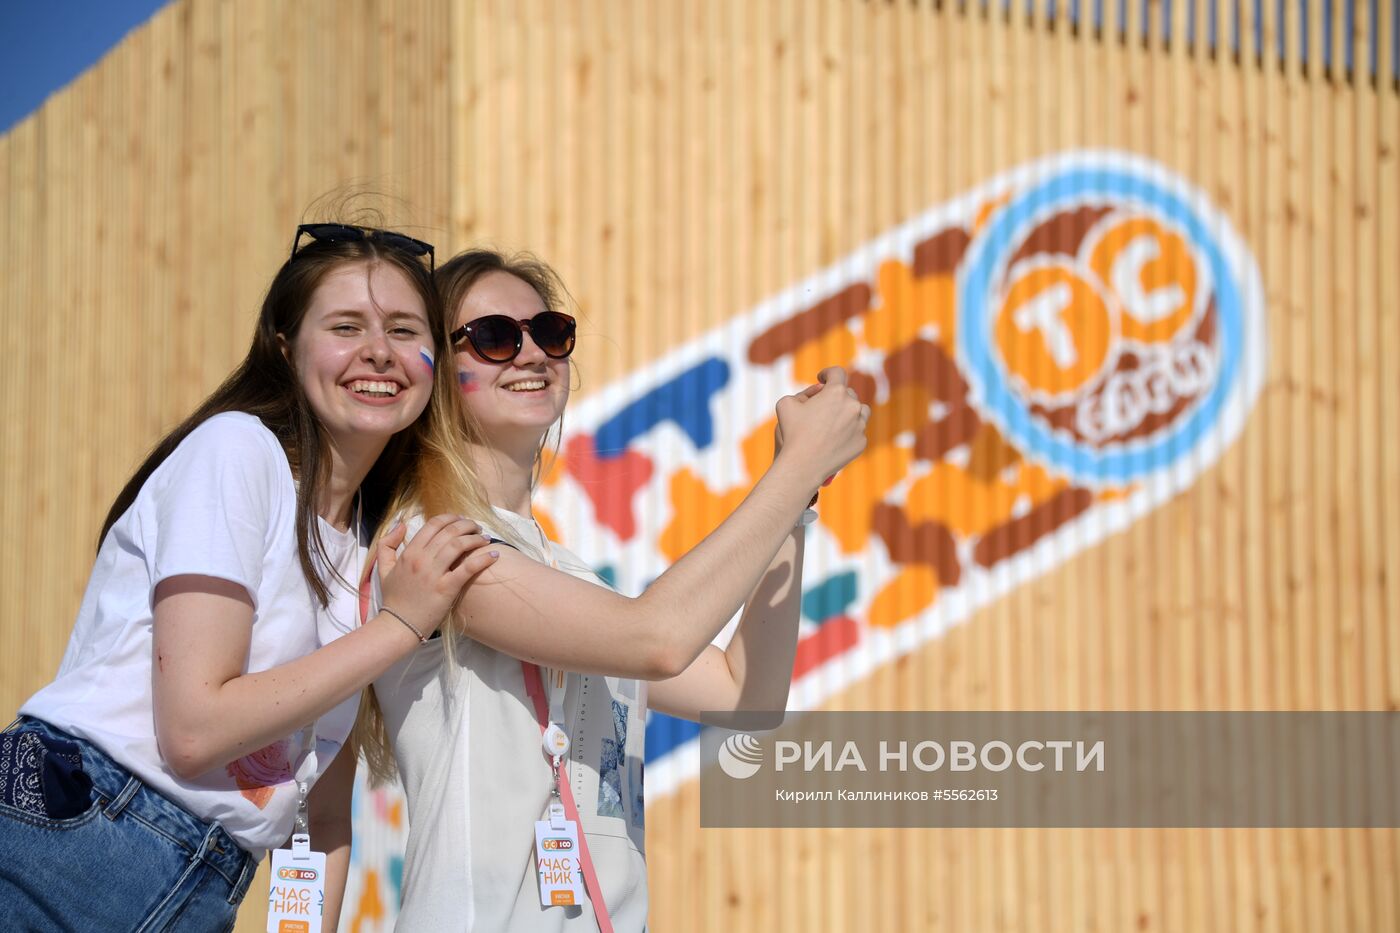 Всероссийский молодёжный форум "Территория смыслов на Клязьме"